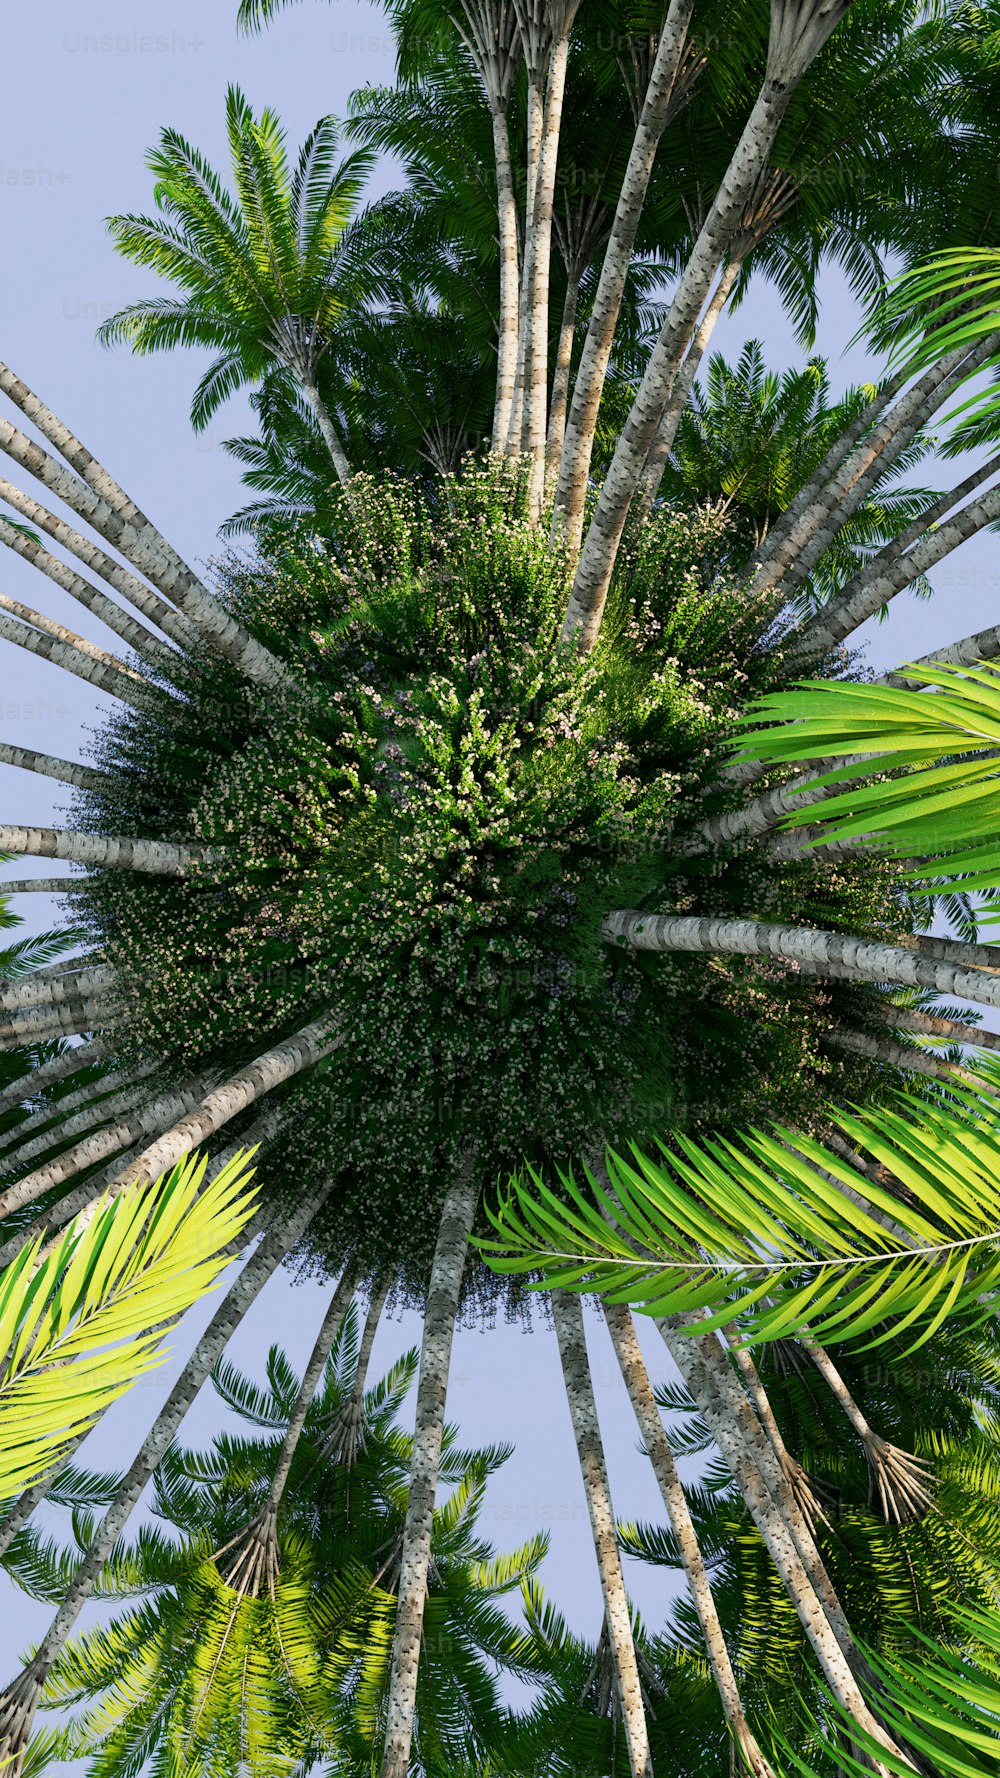 Una palmera muy alta con muchas hojas verdes